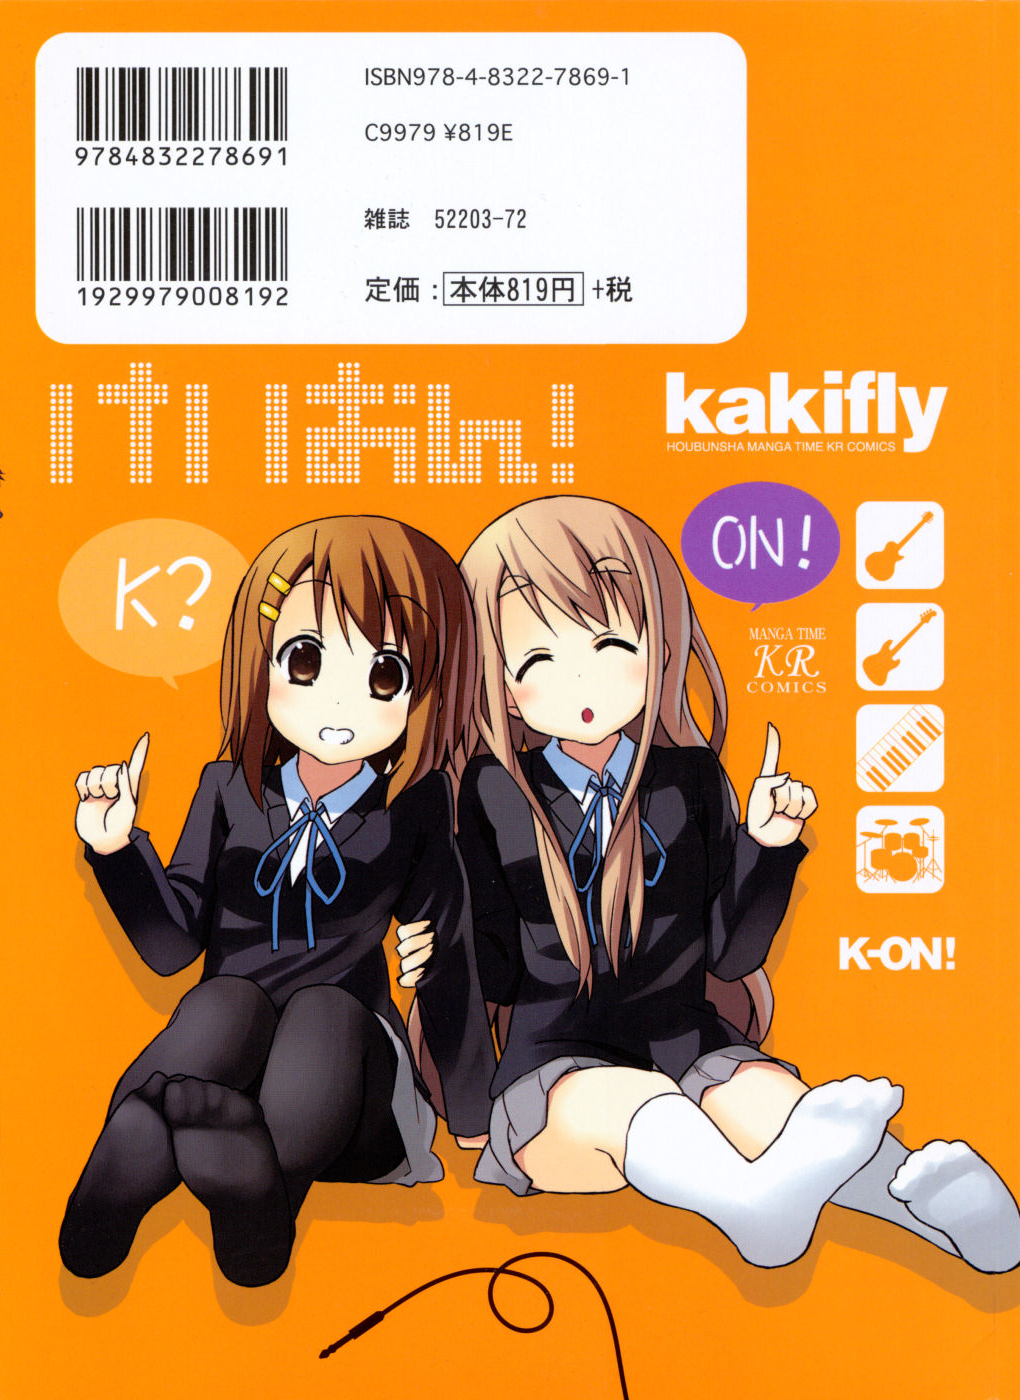 k on - How long ago were the flashbacks? - Anime & Manga Stack